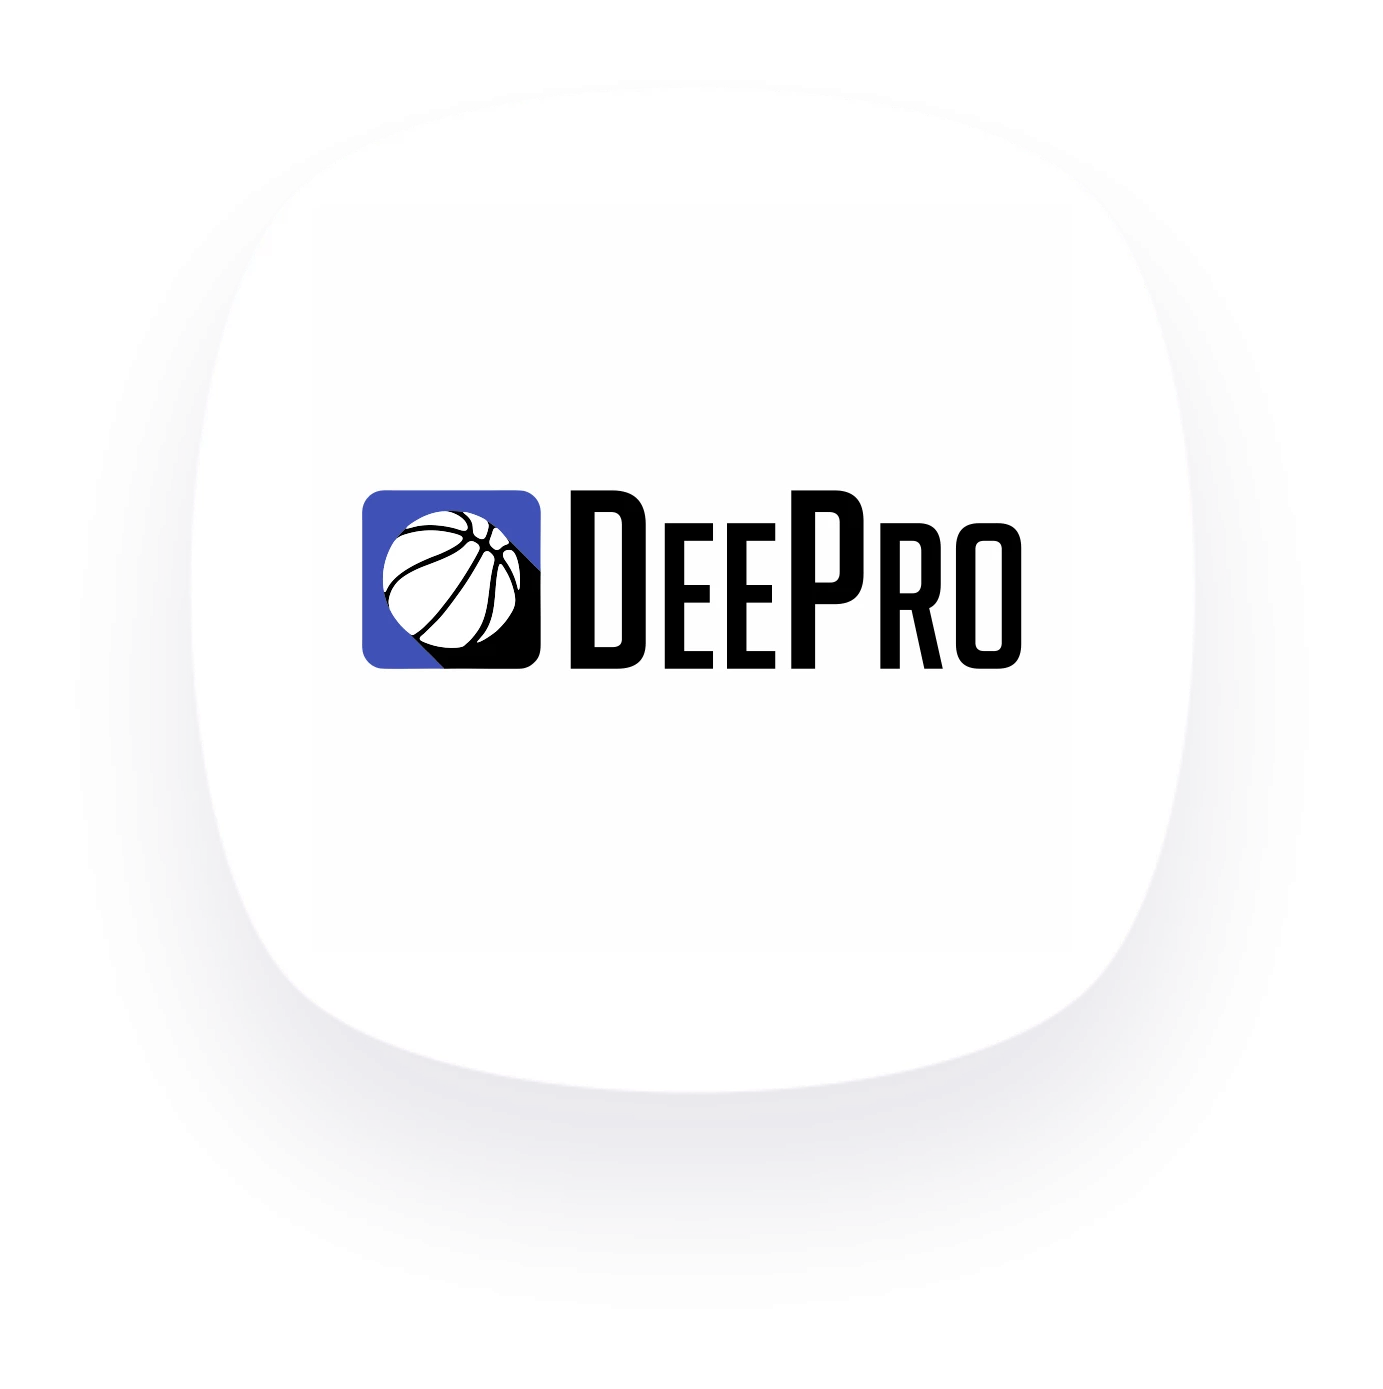 DeePro logo 